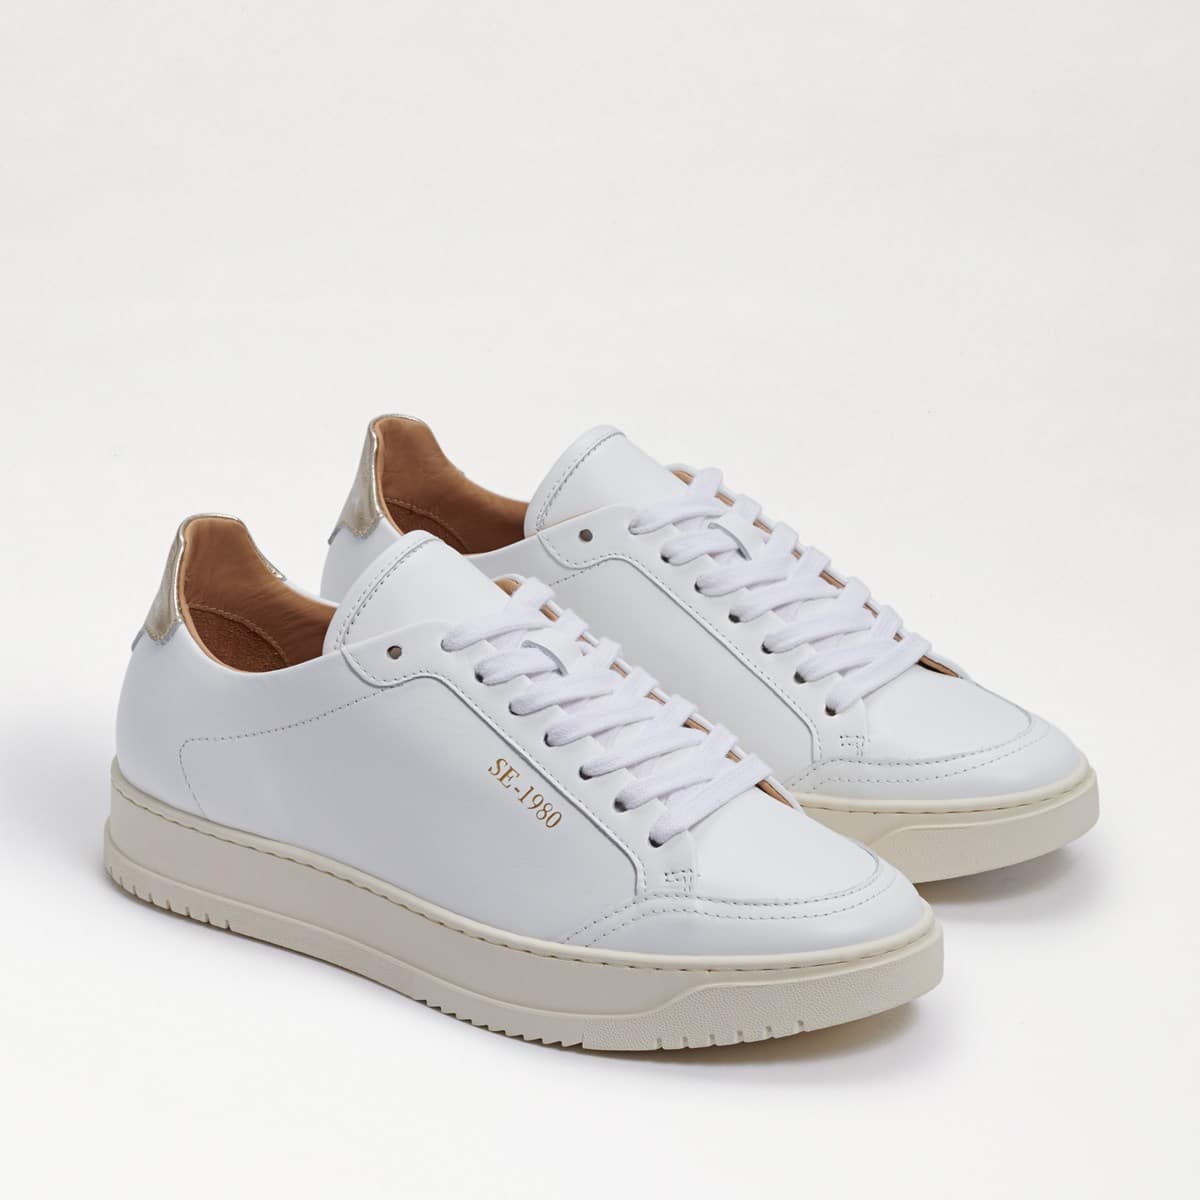 Sam Edelman Ellis Lace Up Sneaker White/Gold Leather SKVnt1DE